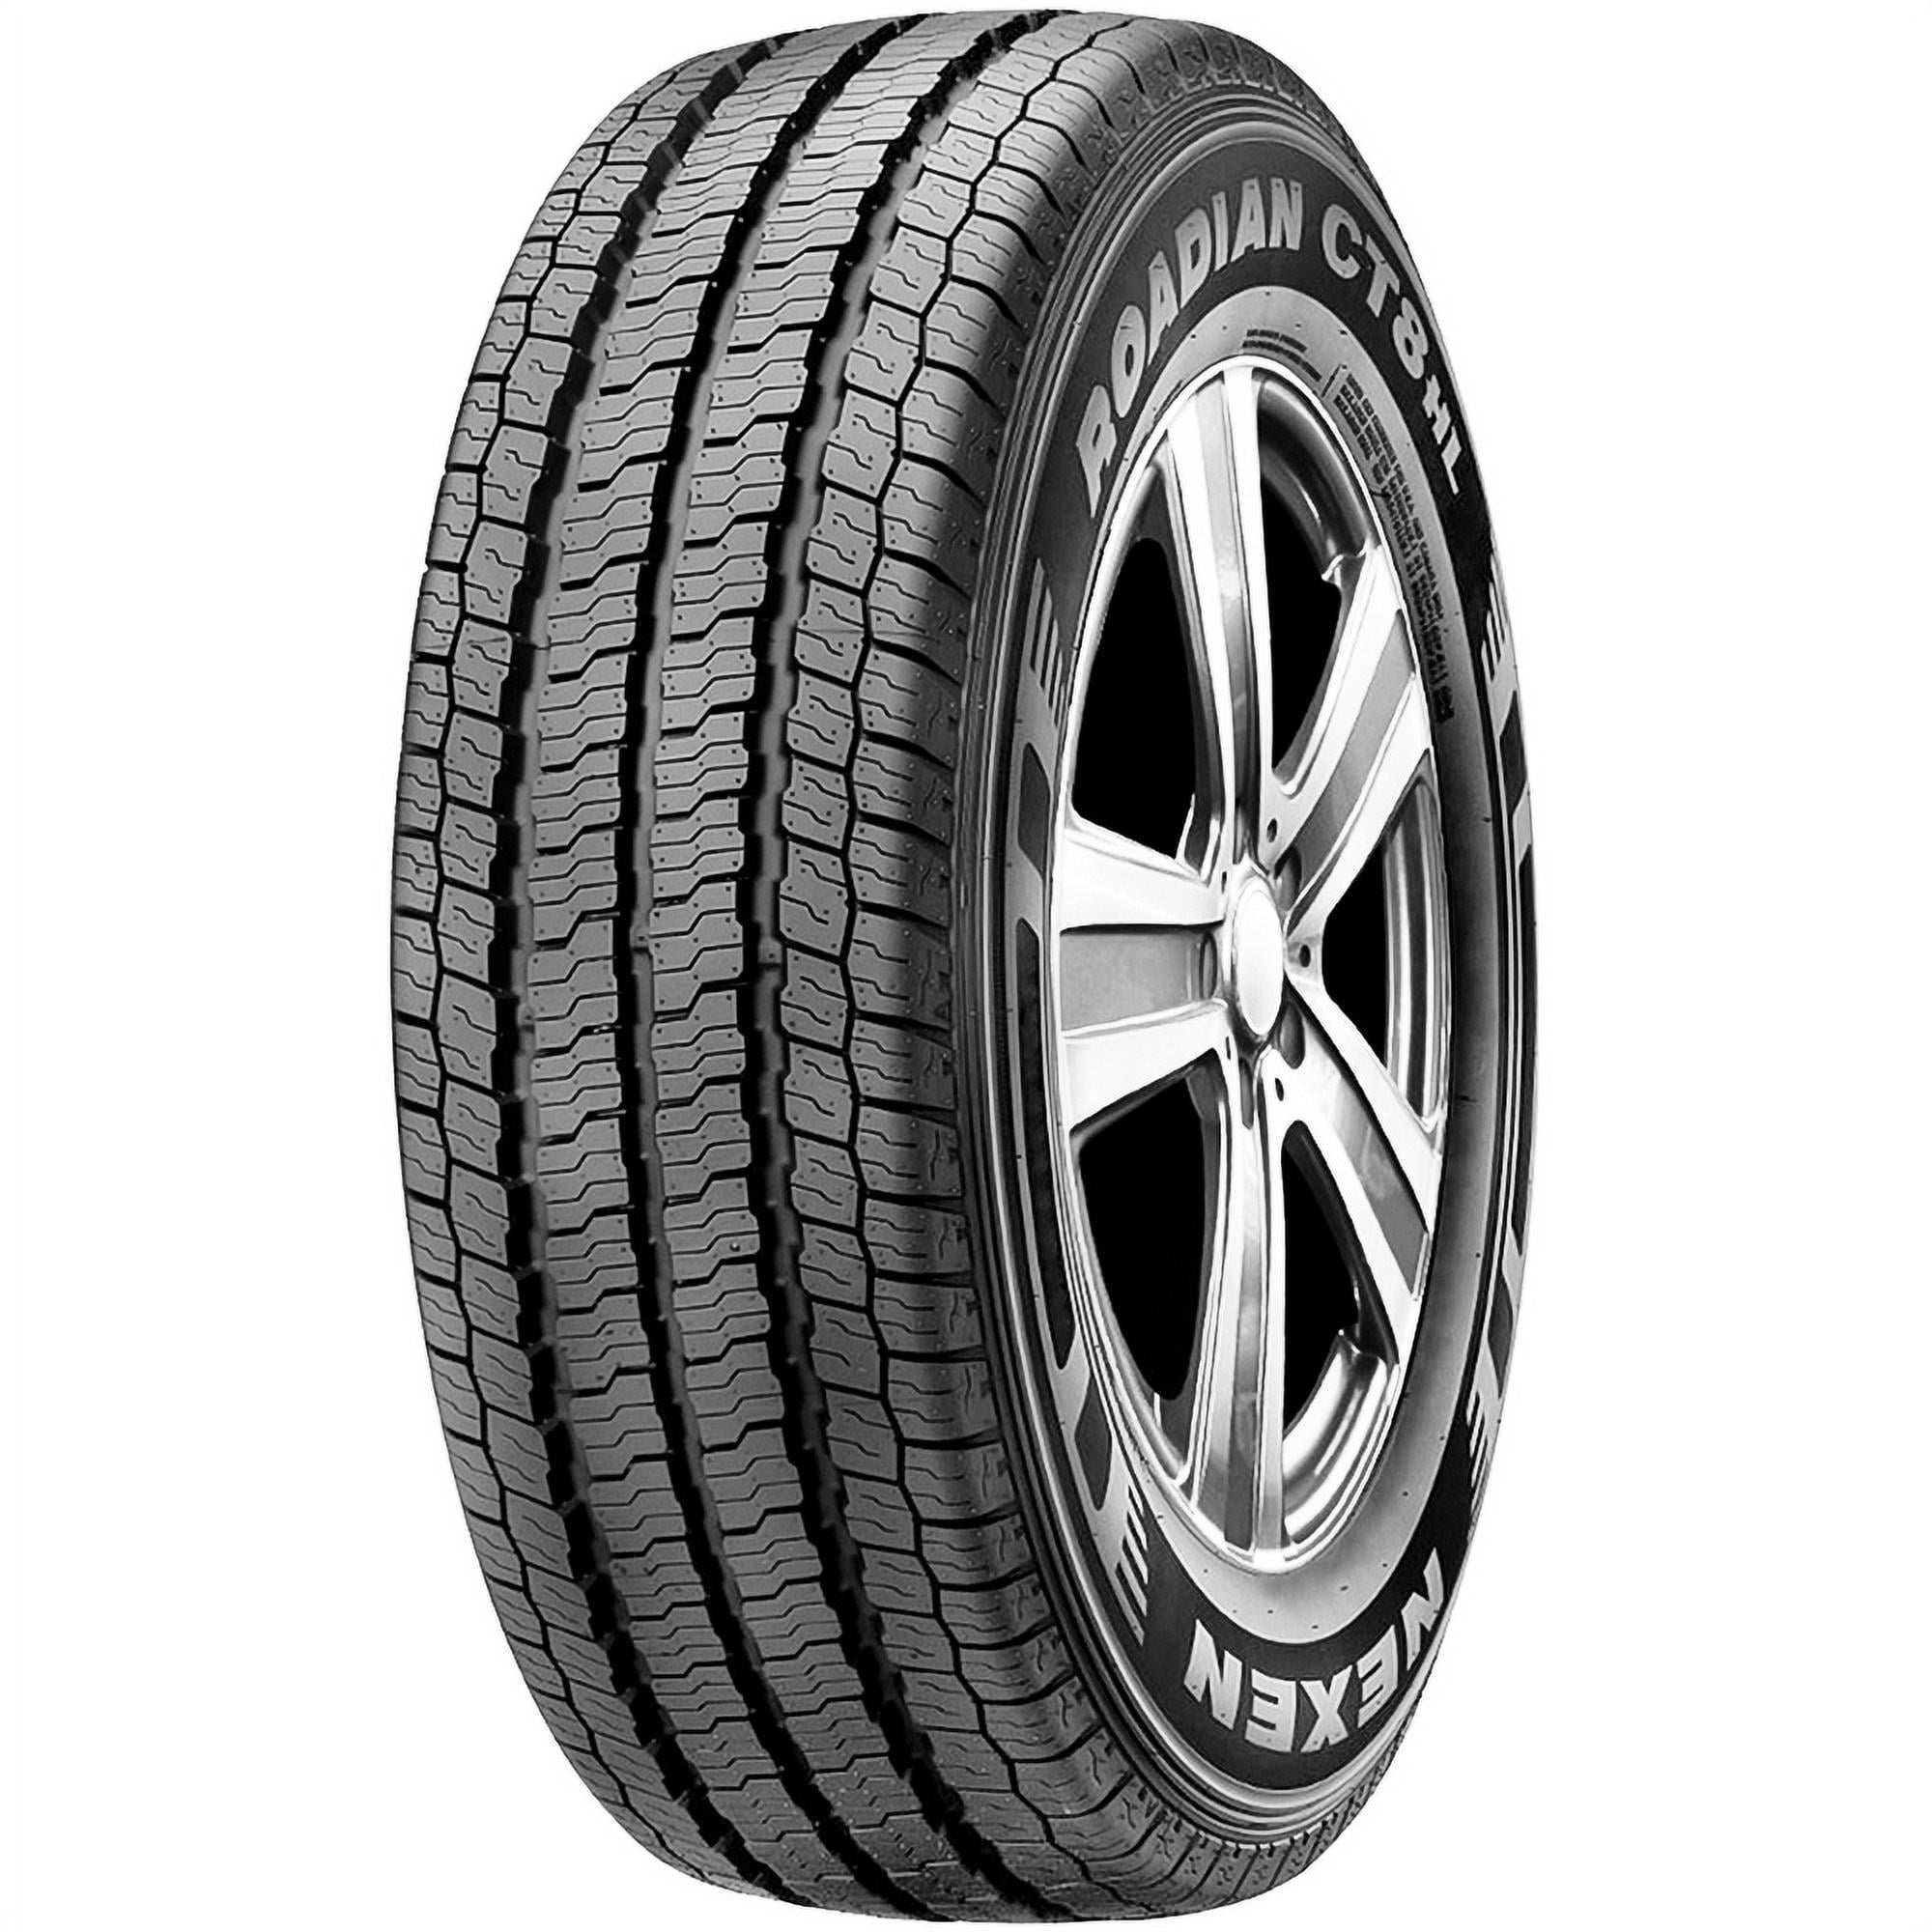 Nexen Roadian CT8 HL LT185/60R15 94T All-Season Tire